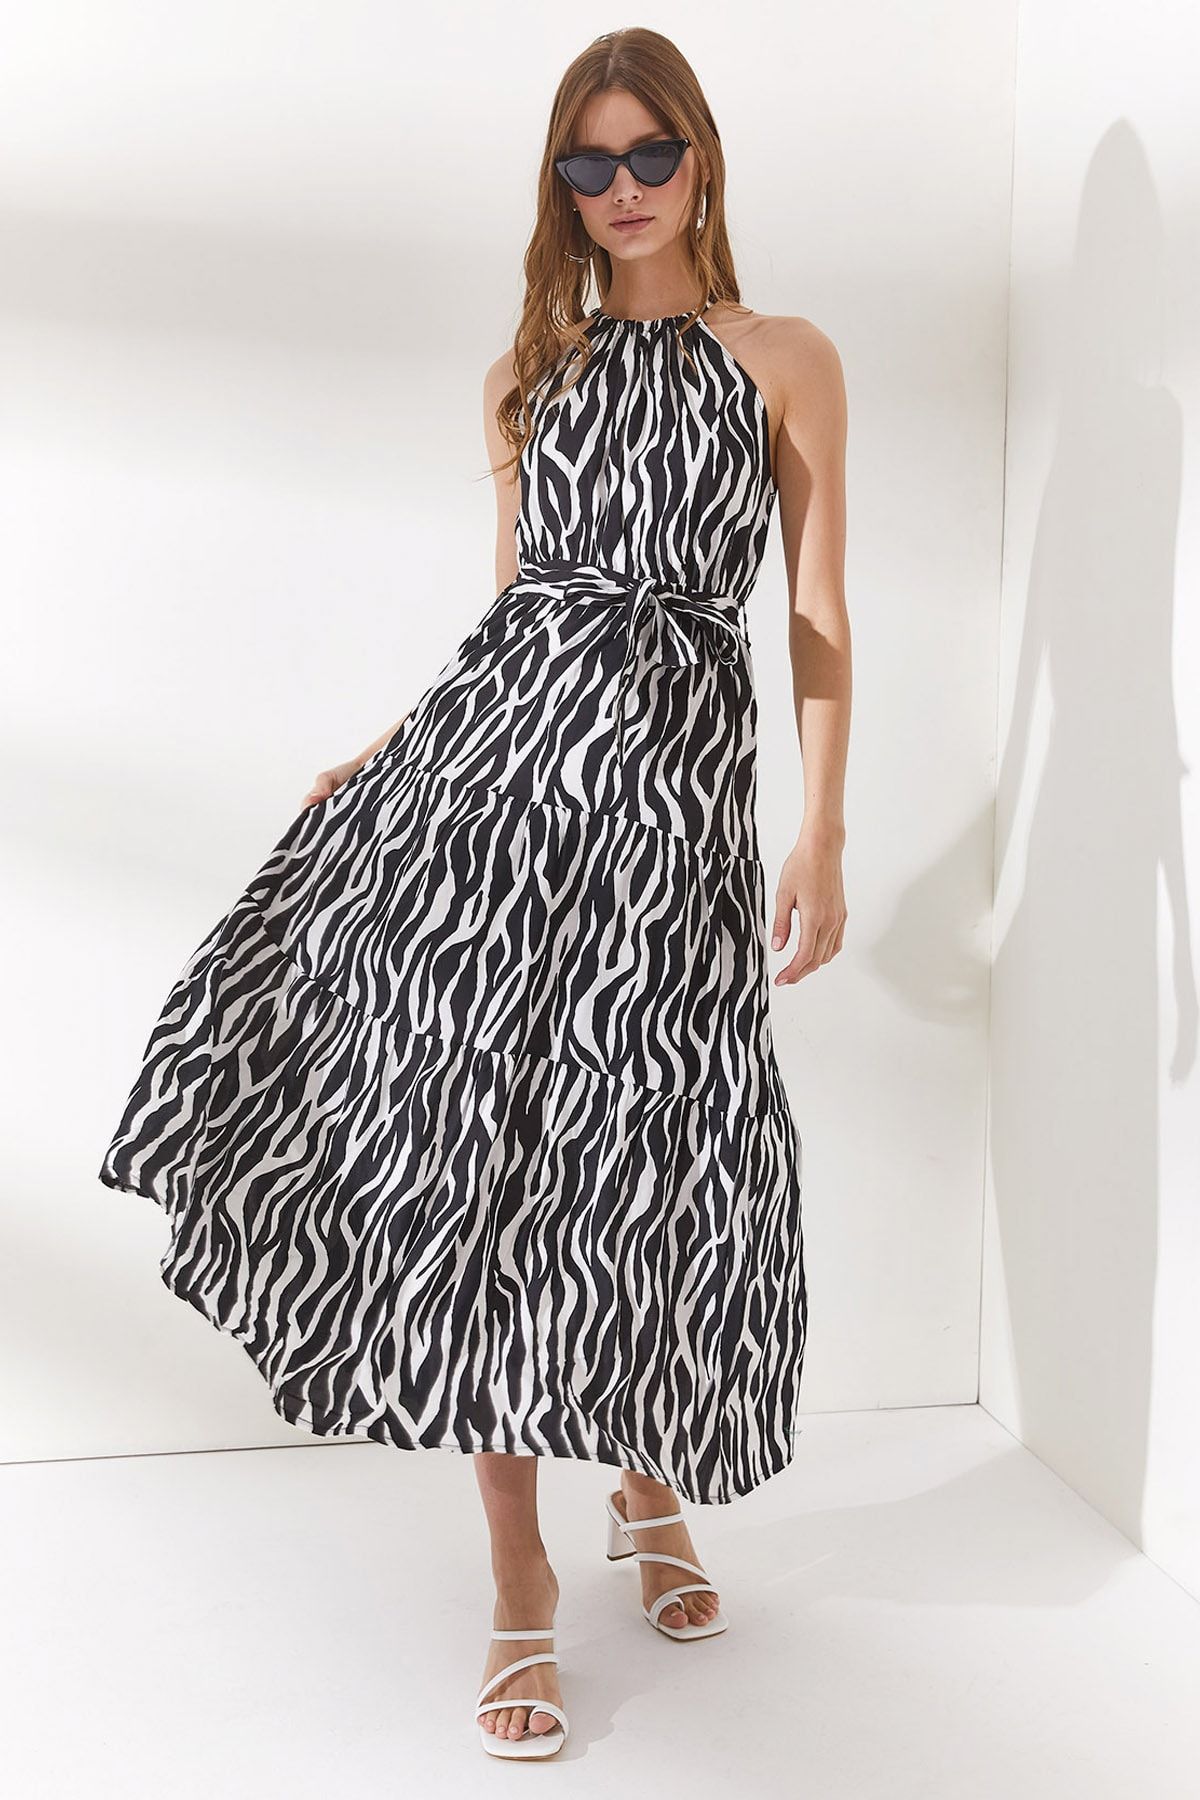 Olalook Kadın Zebra Siyah Halter Yaka Kuşaklı Dokuma Viscon Elbise ELB-19001548